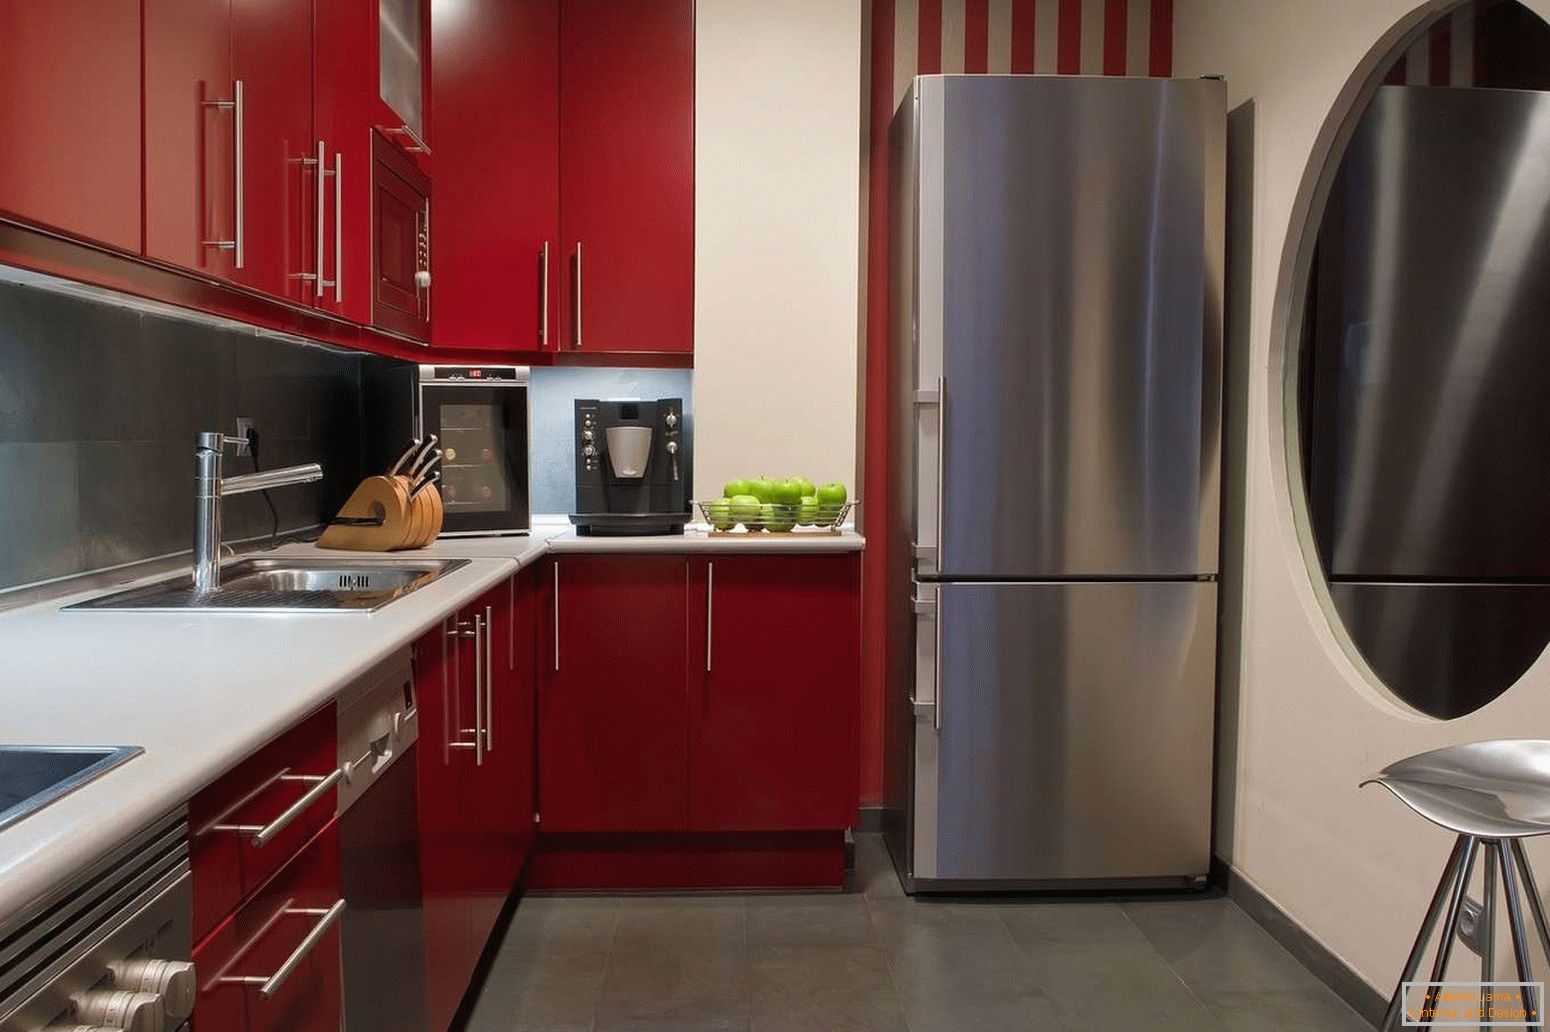 Assoalho cinzento na cozinha com mobília vermelha